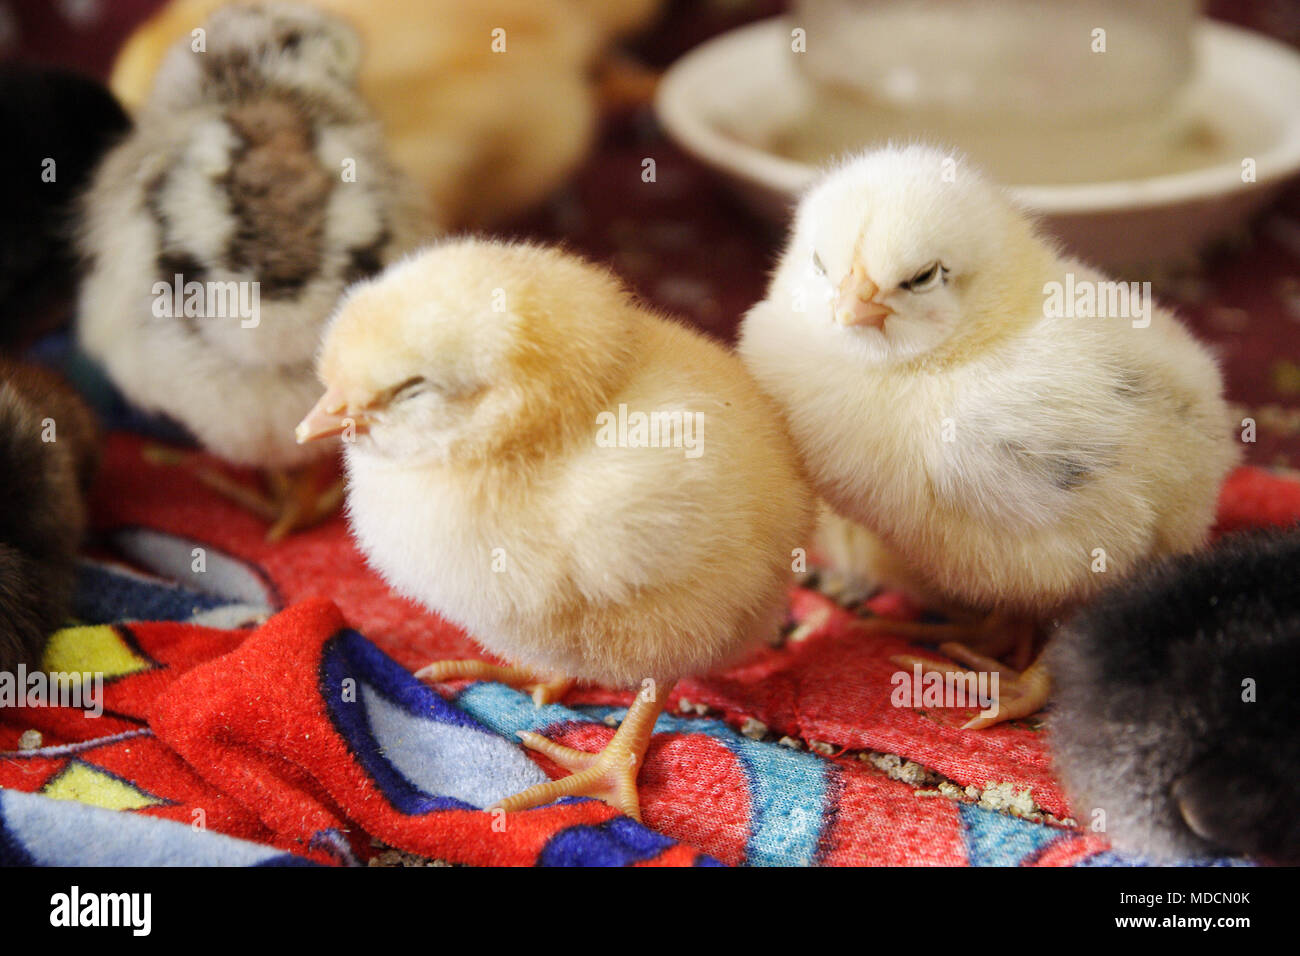 Los pollos están dormidos después de un rico almuerzo. Foto de stock